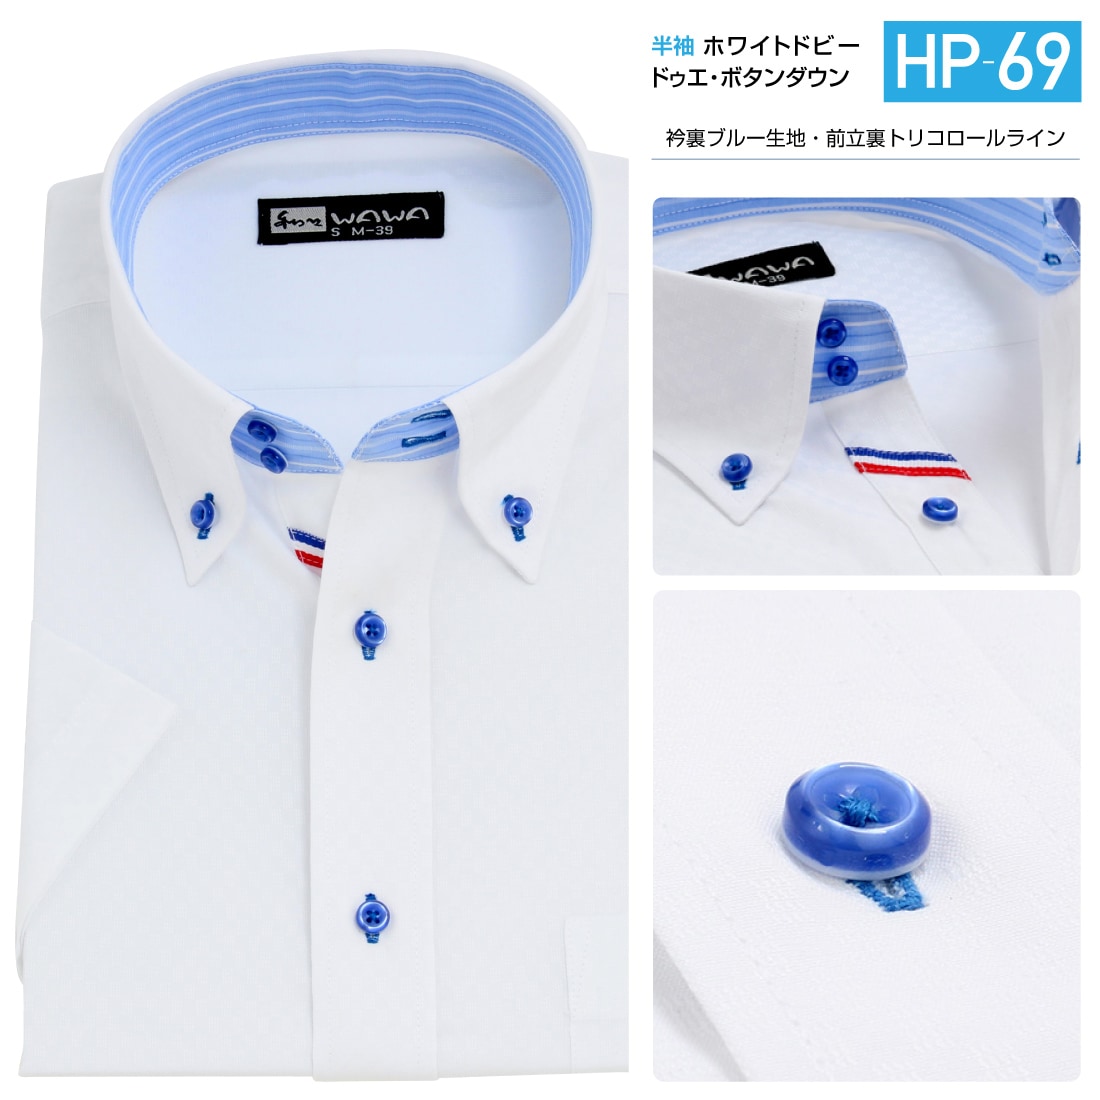 大注目】 半袖ワイシャツ 白 ドビー メンズ ワイシャツ ボタンダウン ドウェ 形態安定 Yシャツ ホワイト スリム M L 標準体 LL 3L  HP-65 送料無料